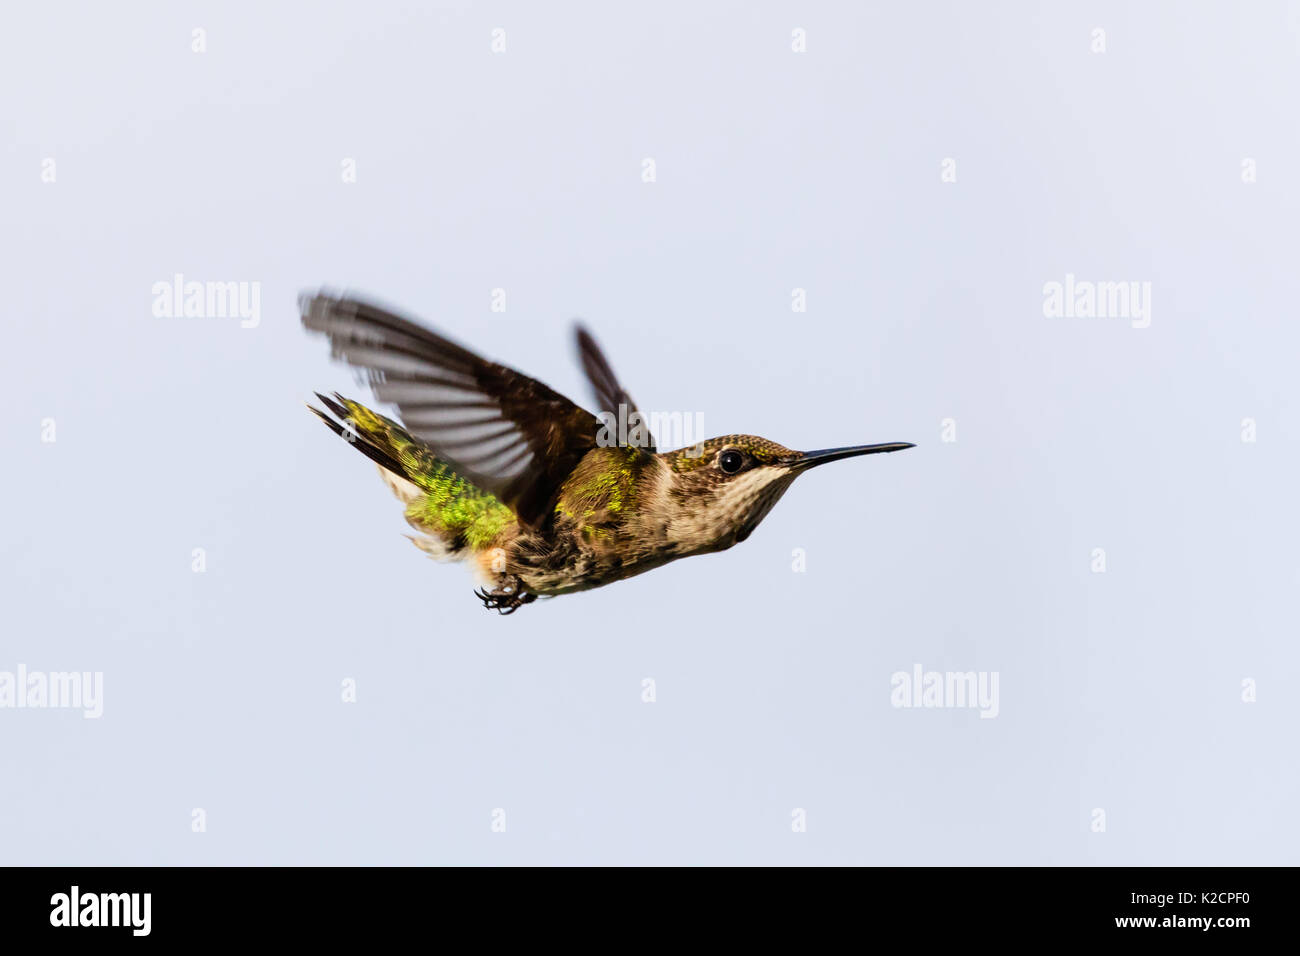 Femmina di Ruby-throated hummingbird, archilochus colubris, in un tuffo a procurarsi il cibo, preso dal suo lato destro leggermente avanti e al di sotto di Foto Stock